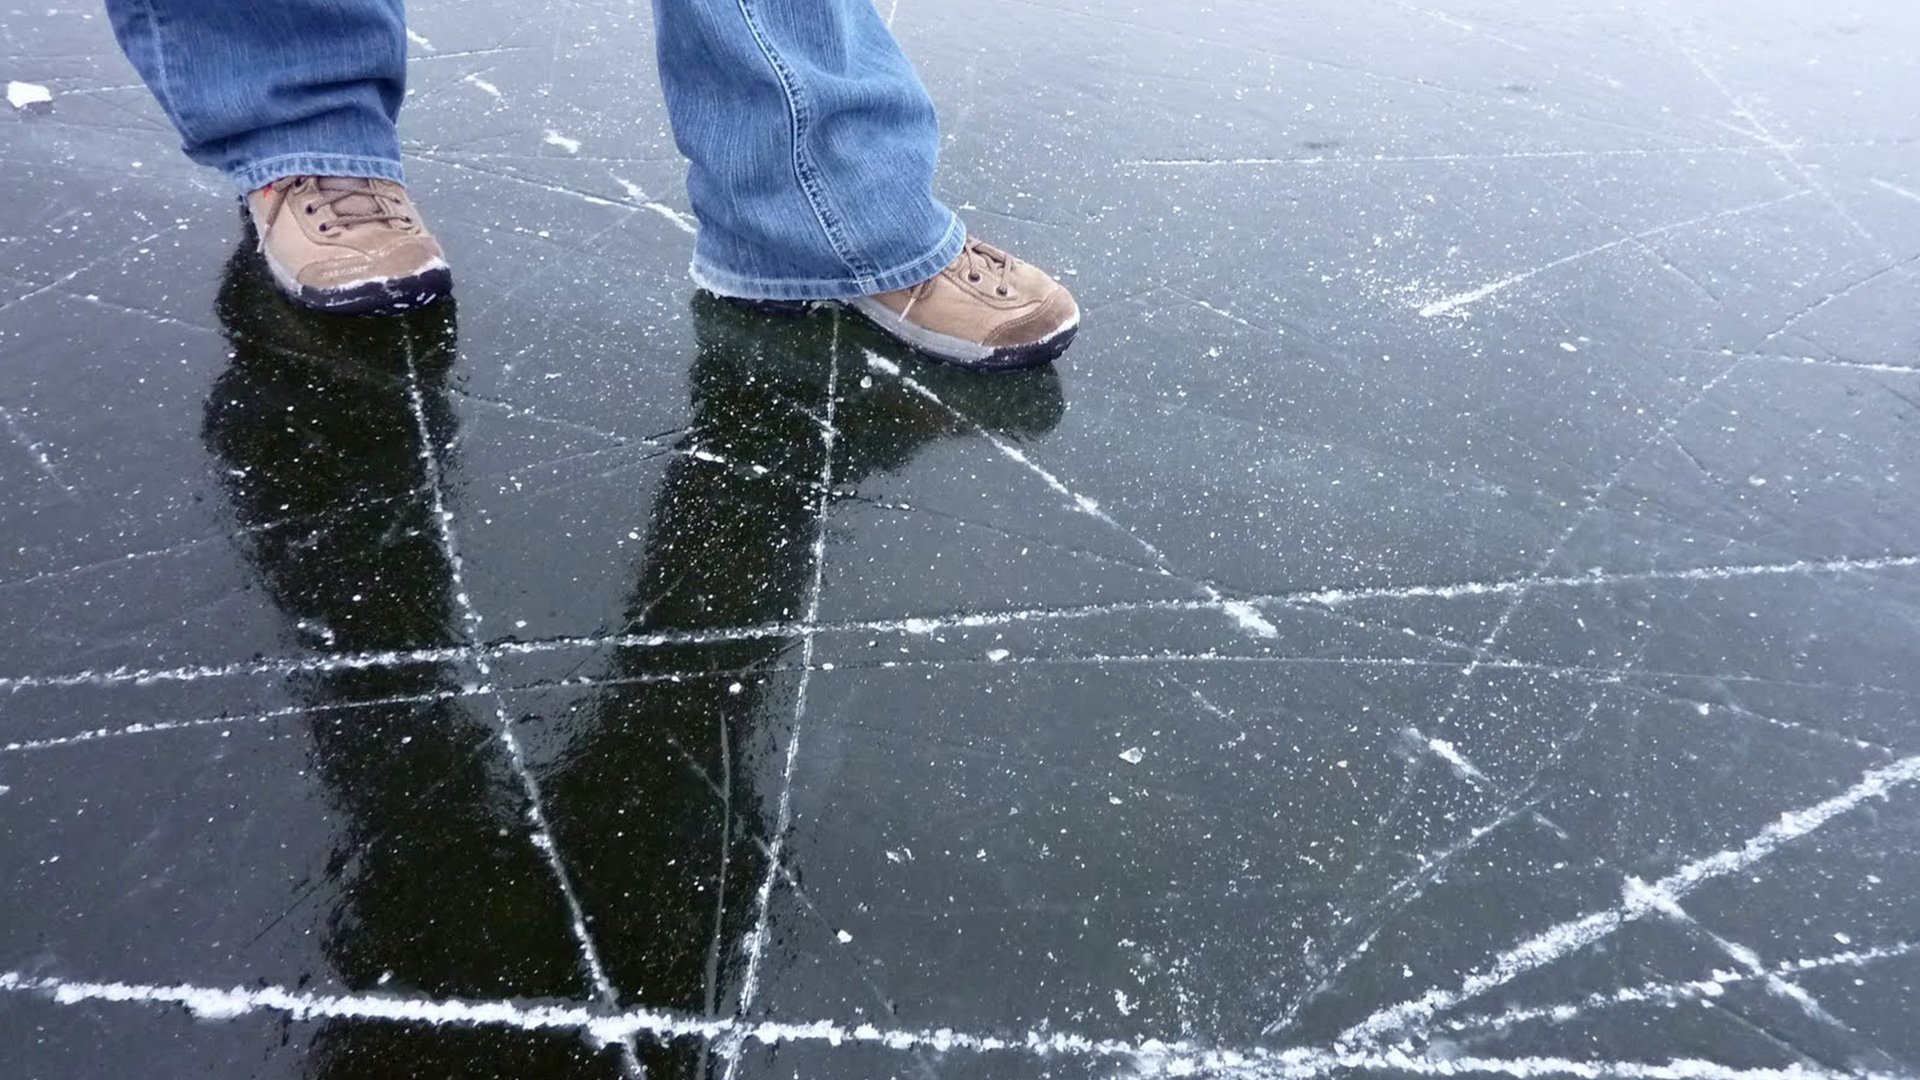 Шагающий лед. Тонкий лед. Непрочный лед. Хрупкий лед. Лед под ногами.